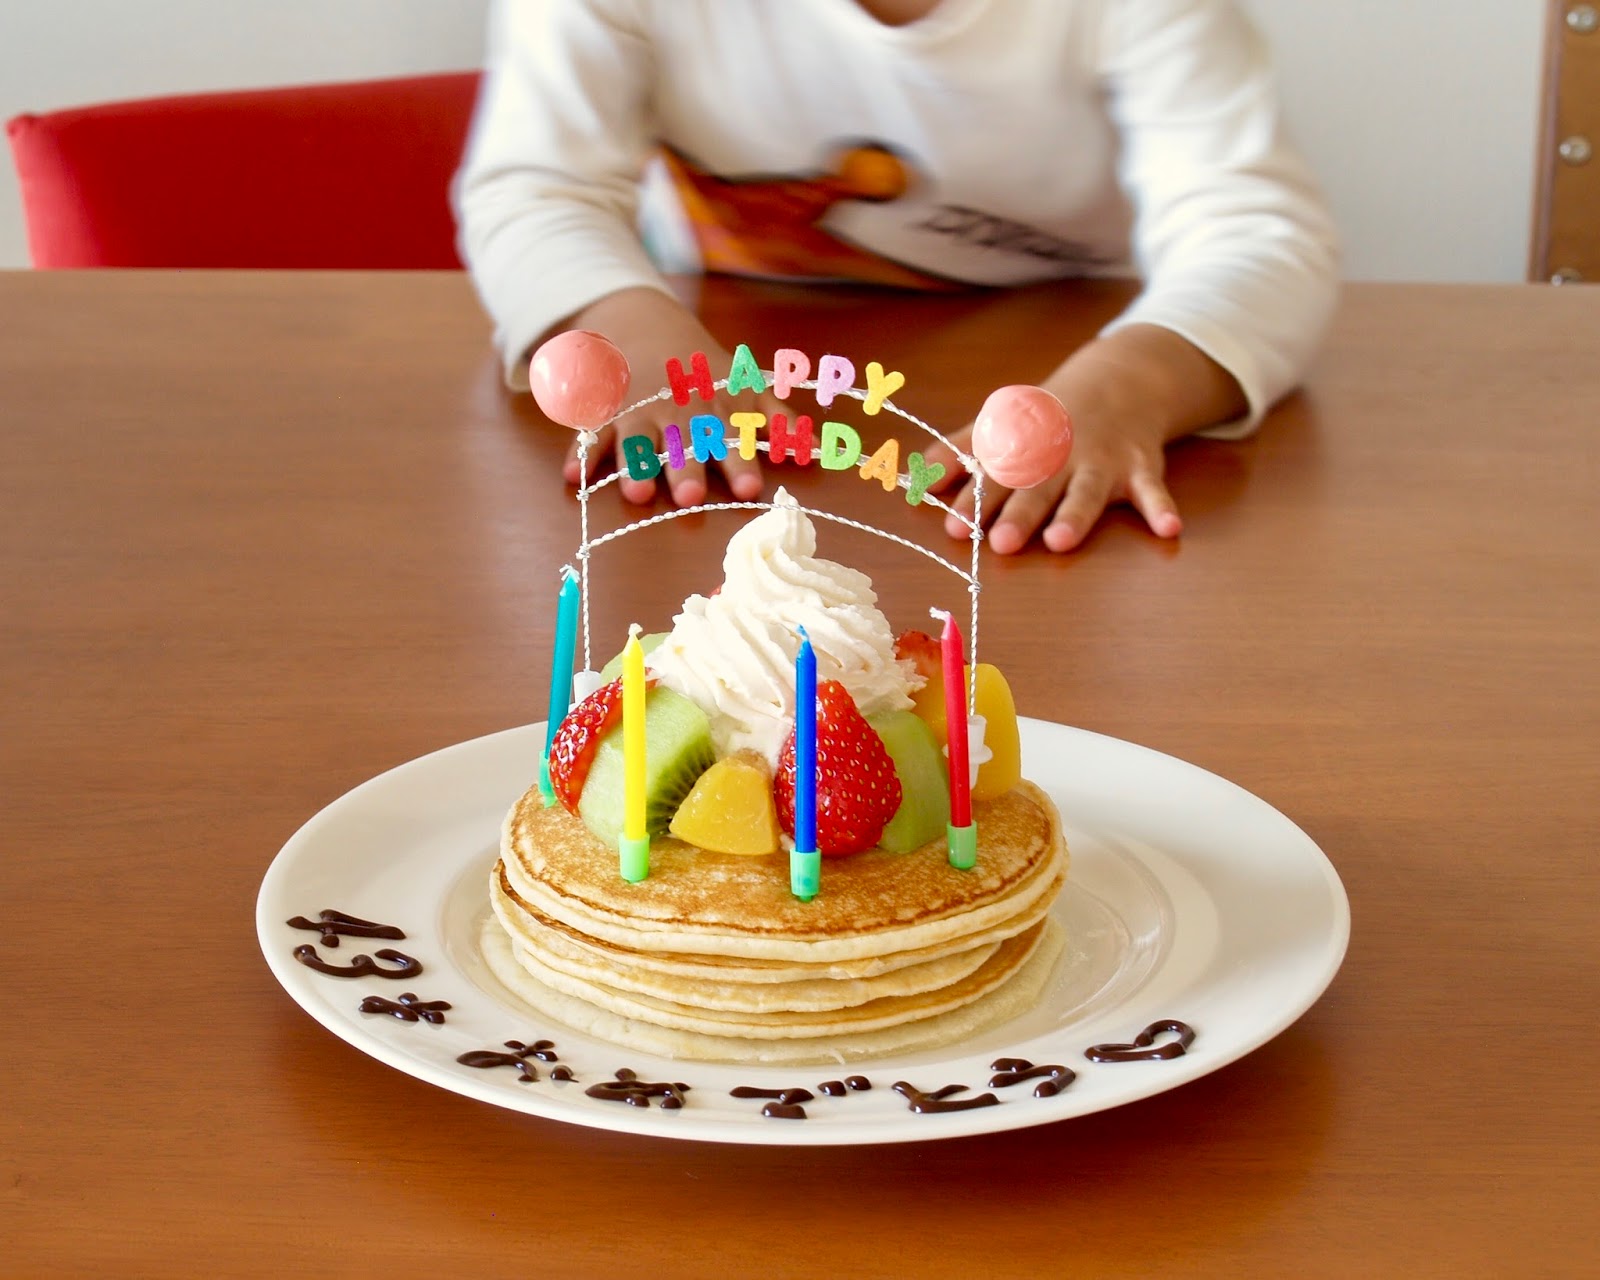 バースデーパンケーキ 誕生日ケーキ の作り方 英語レシピ 海外向け日本の家庭料理動画 Cooklabo 英語で簡単料理動画